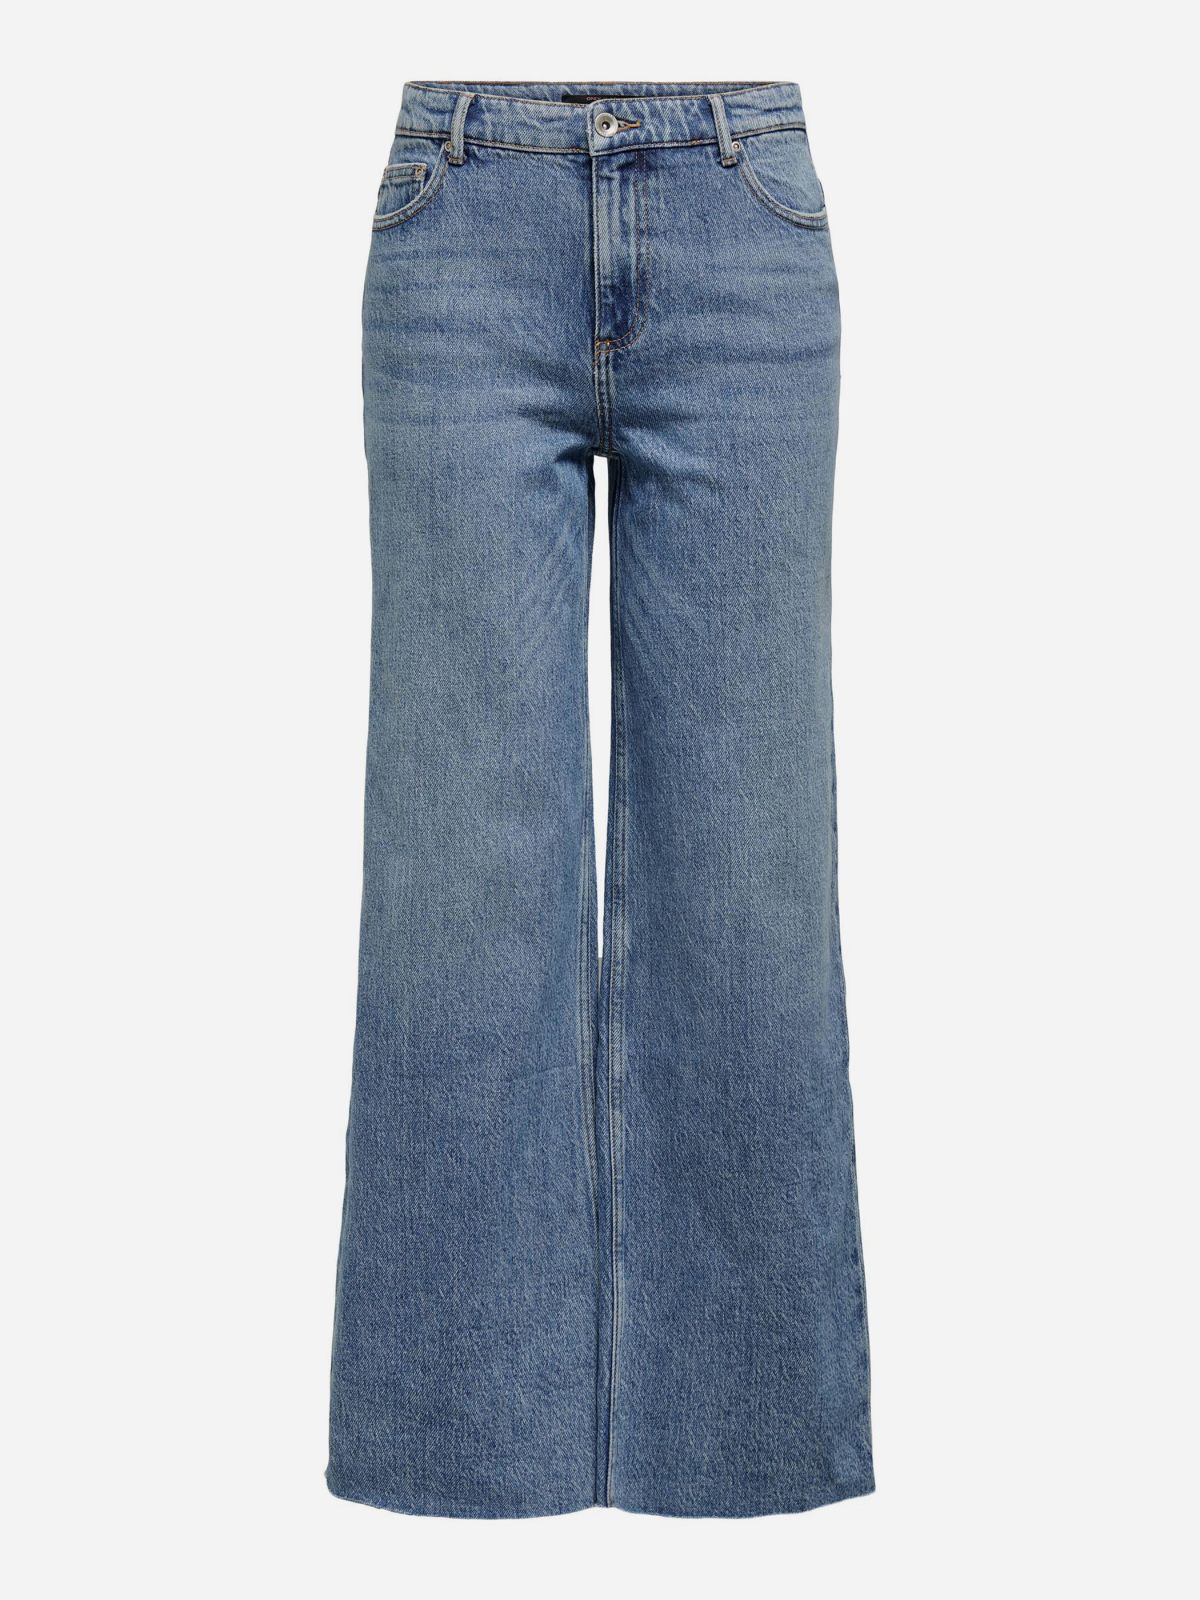  ג'ינס מתרחב בגזרה גבוהה / נשים של ONLY